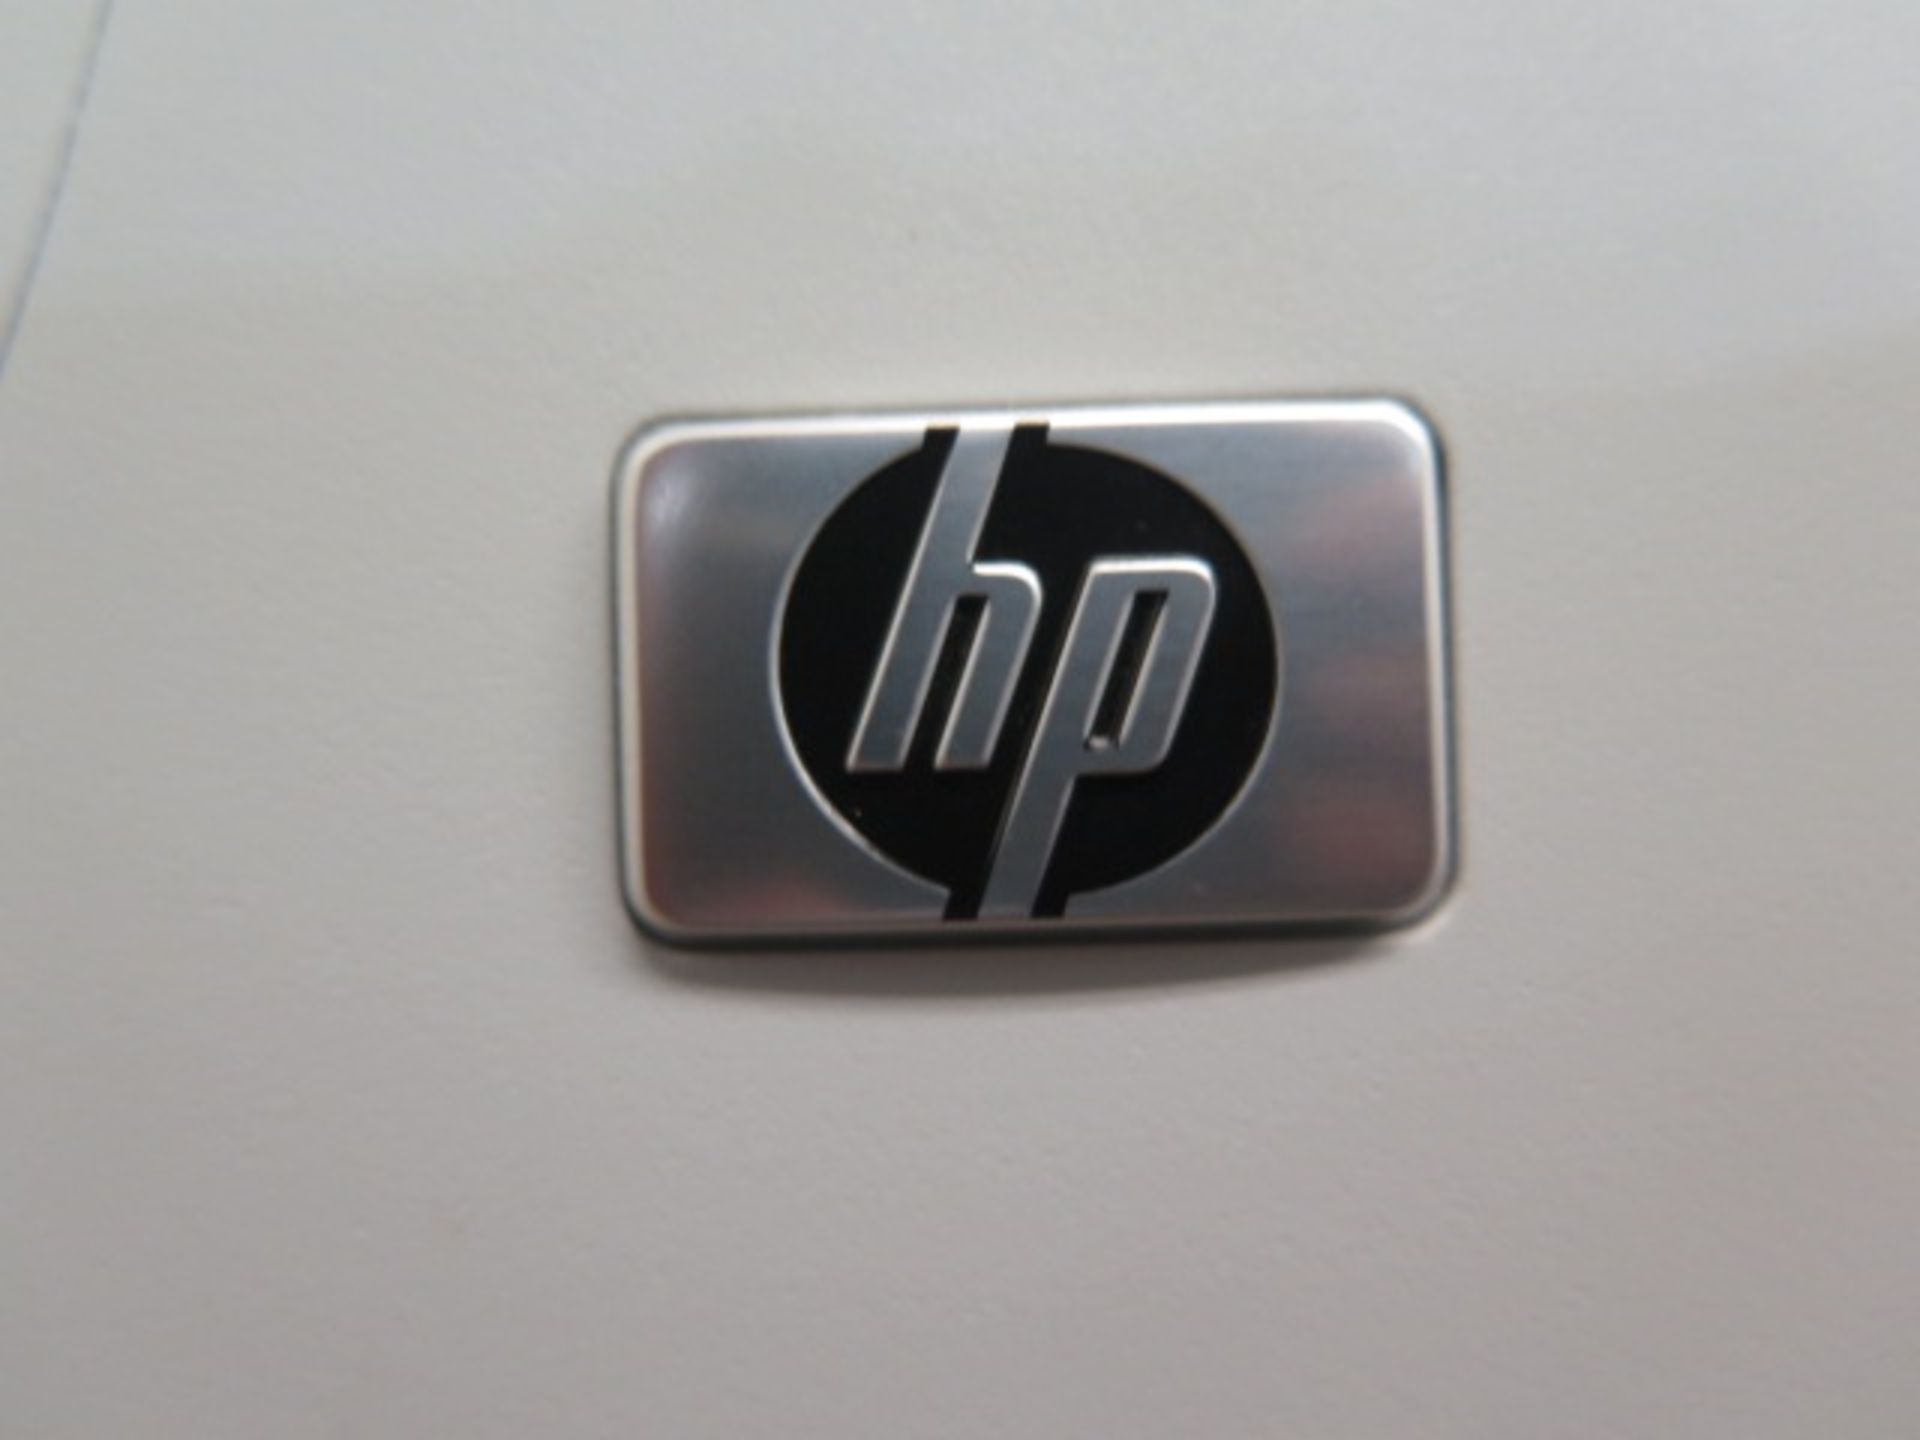 Hewlett Packard Laserjet P3015 Office Printers (7) (SOLD AS-IS - NO WARRANTY) - Image 10 of 10